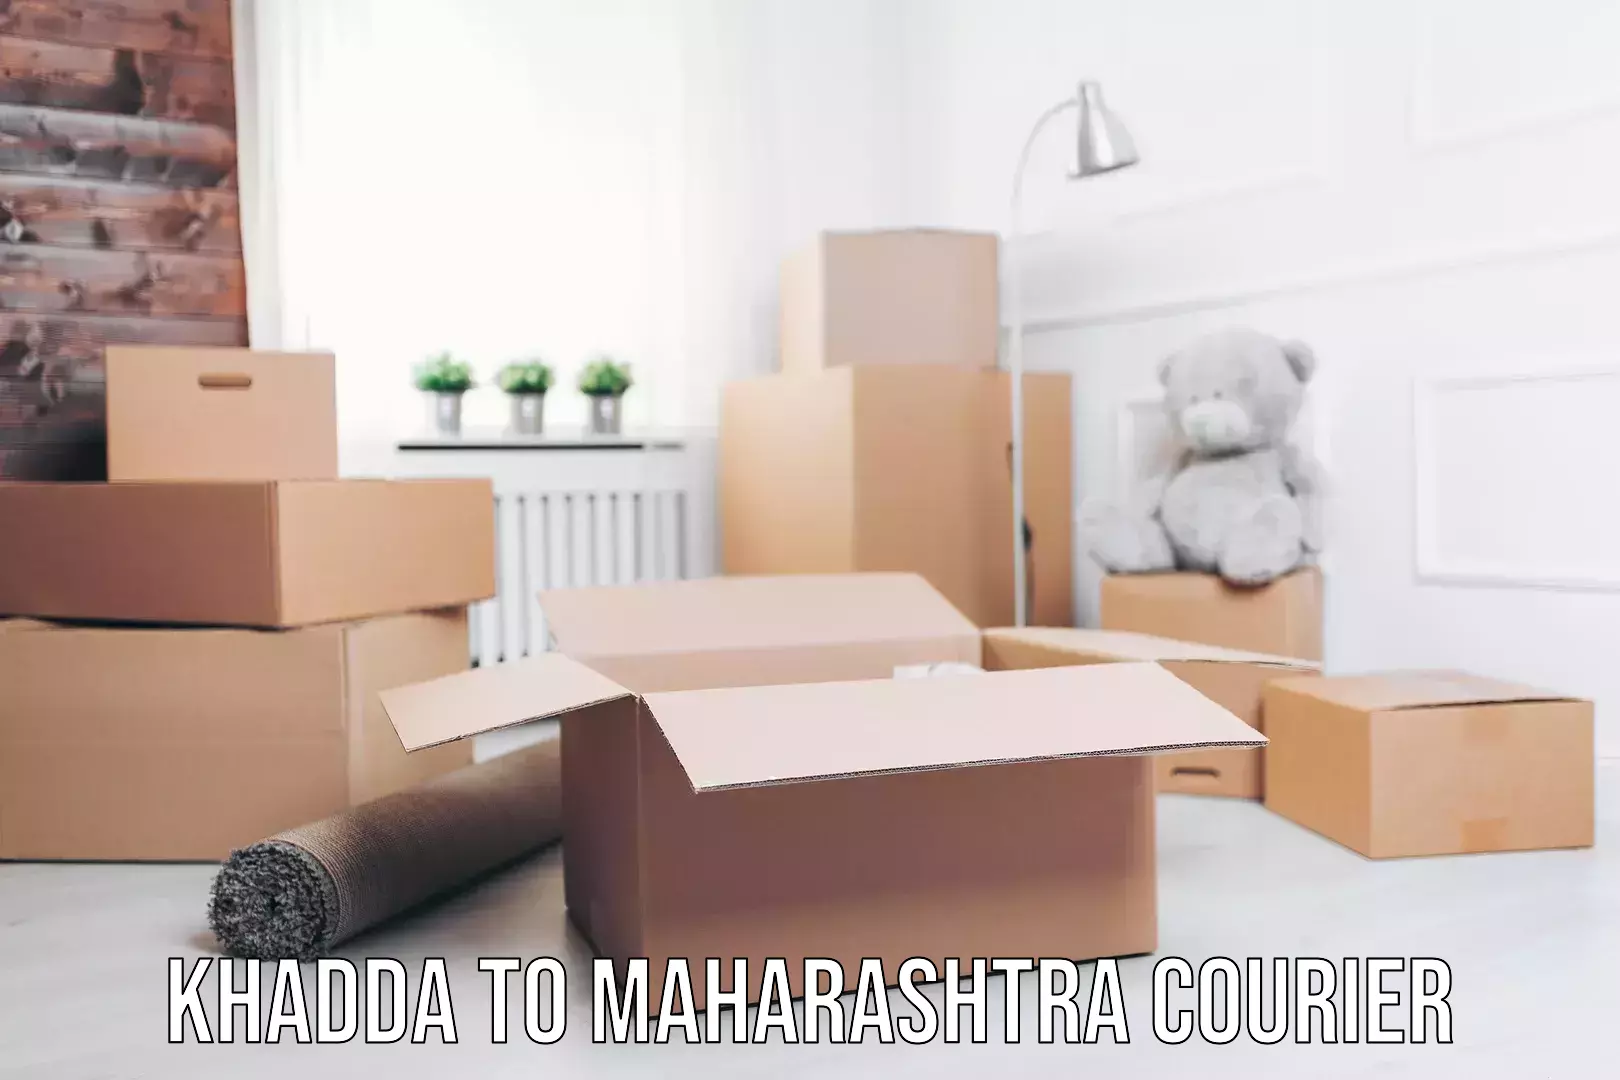 Home shifting experts Khadda to Maharashtra